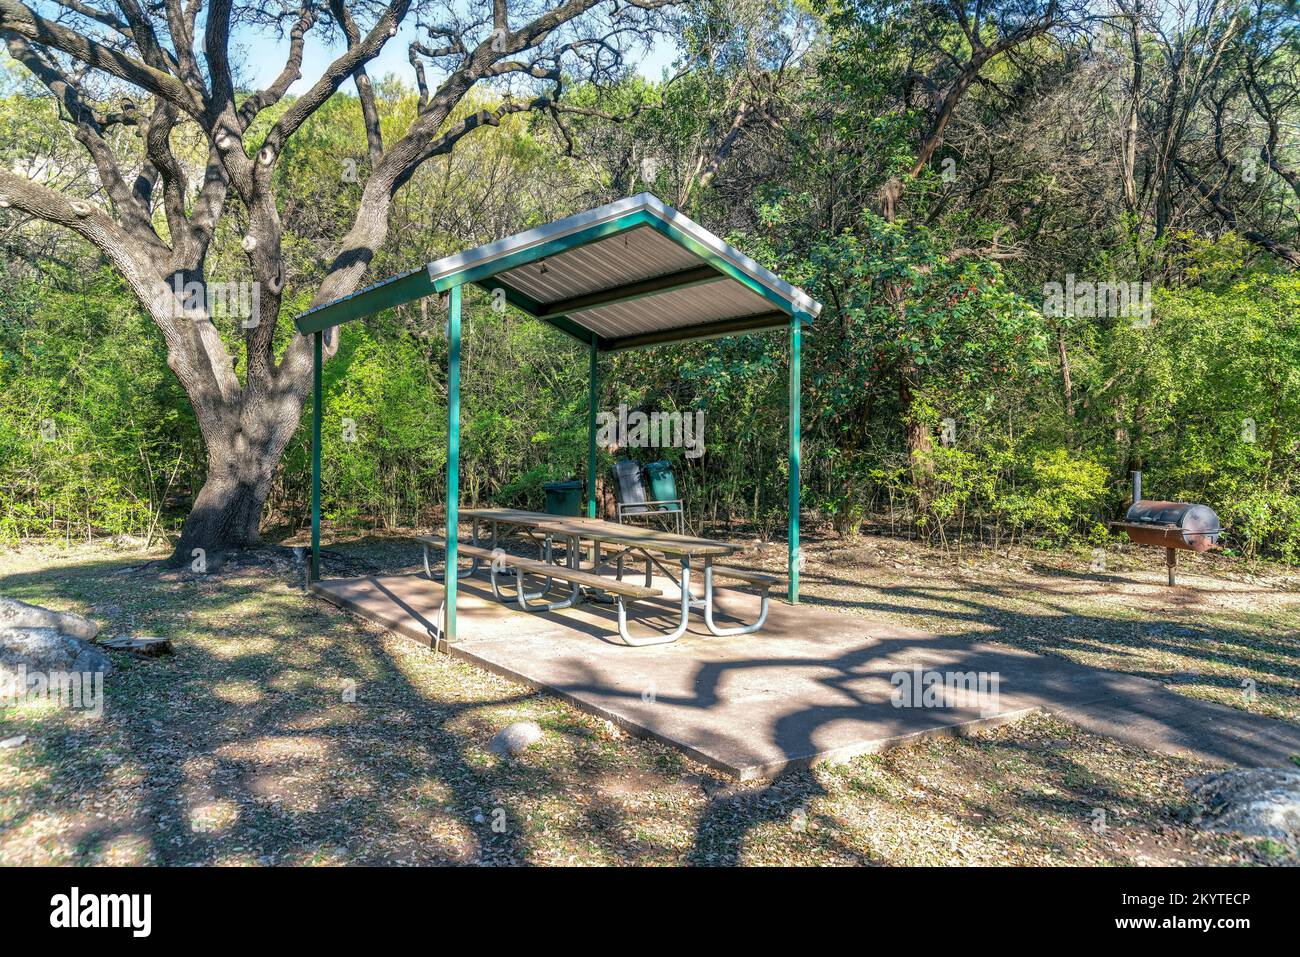 Austin, Texas - Picknicktisch mit Sitzen unter einem Dach in einem Gemeinschaftspark. Essbereich mit Grills auf der rechten Seite gegenüber den Bäumen im Hintergrund. Stockfoto